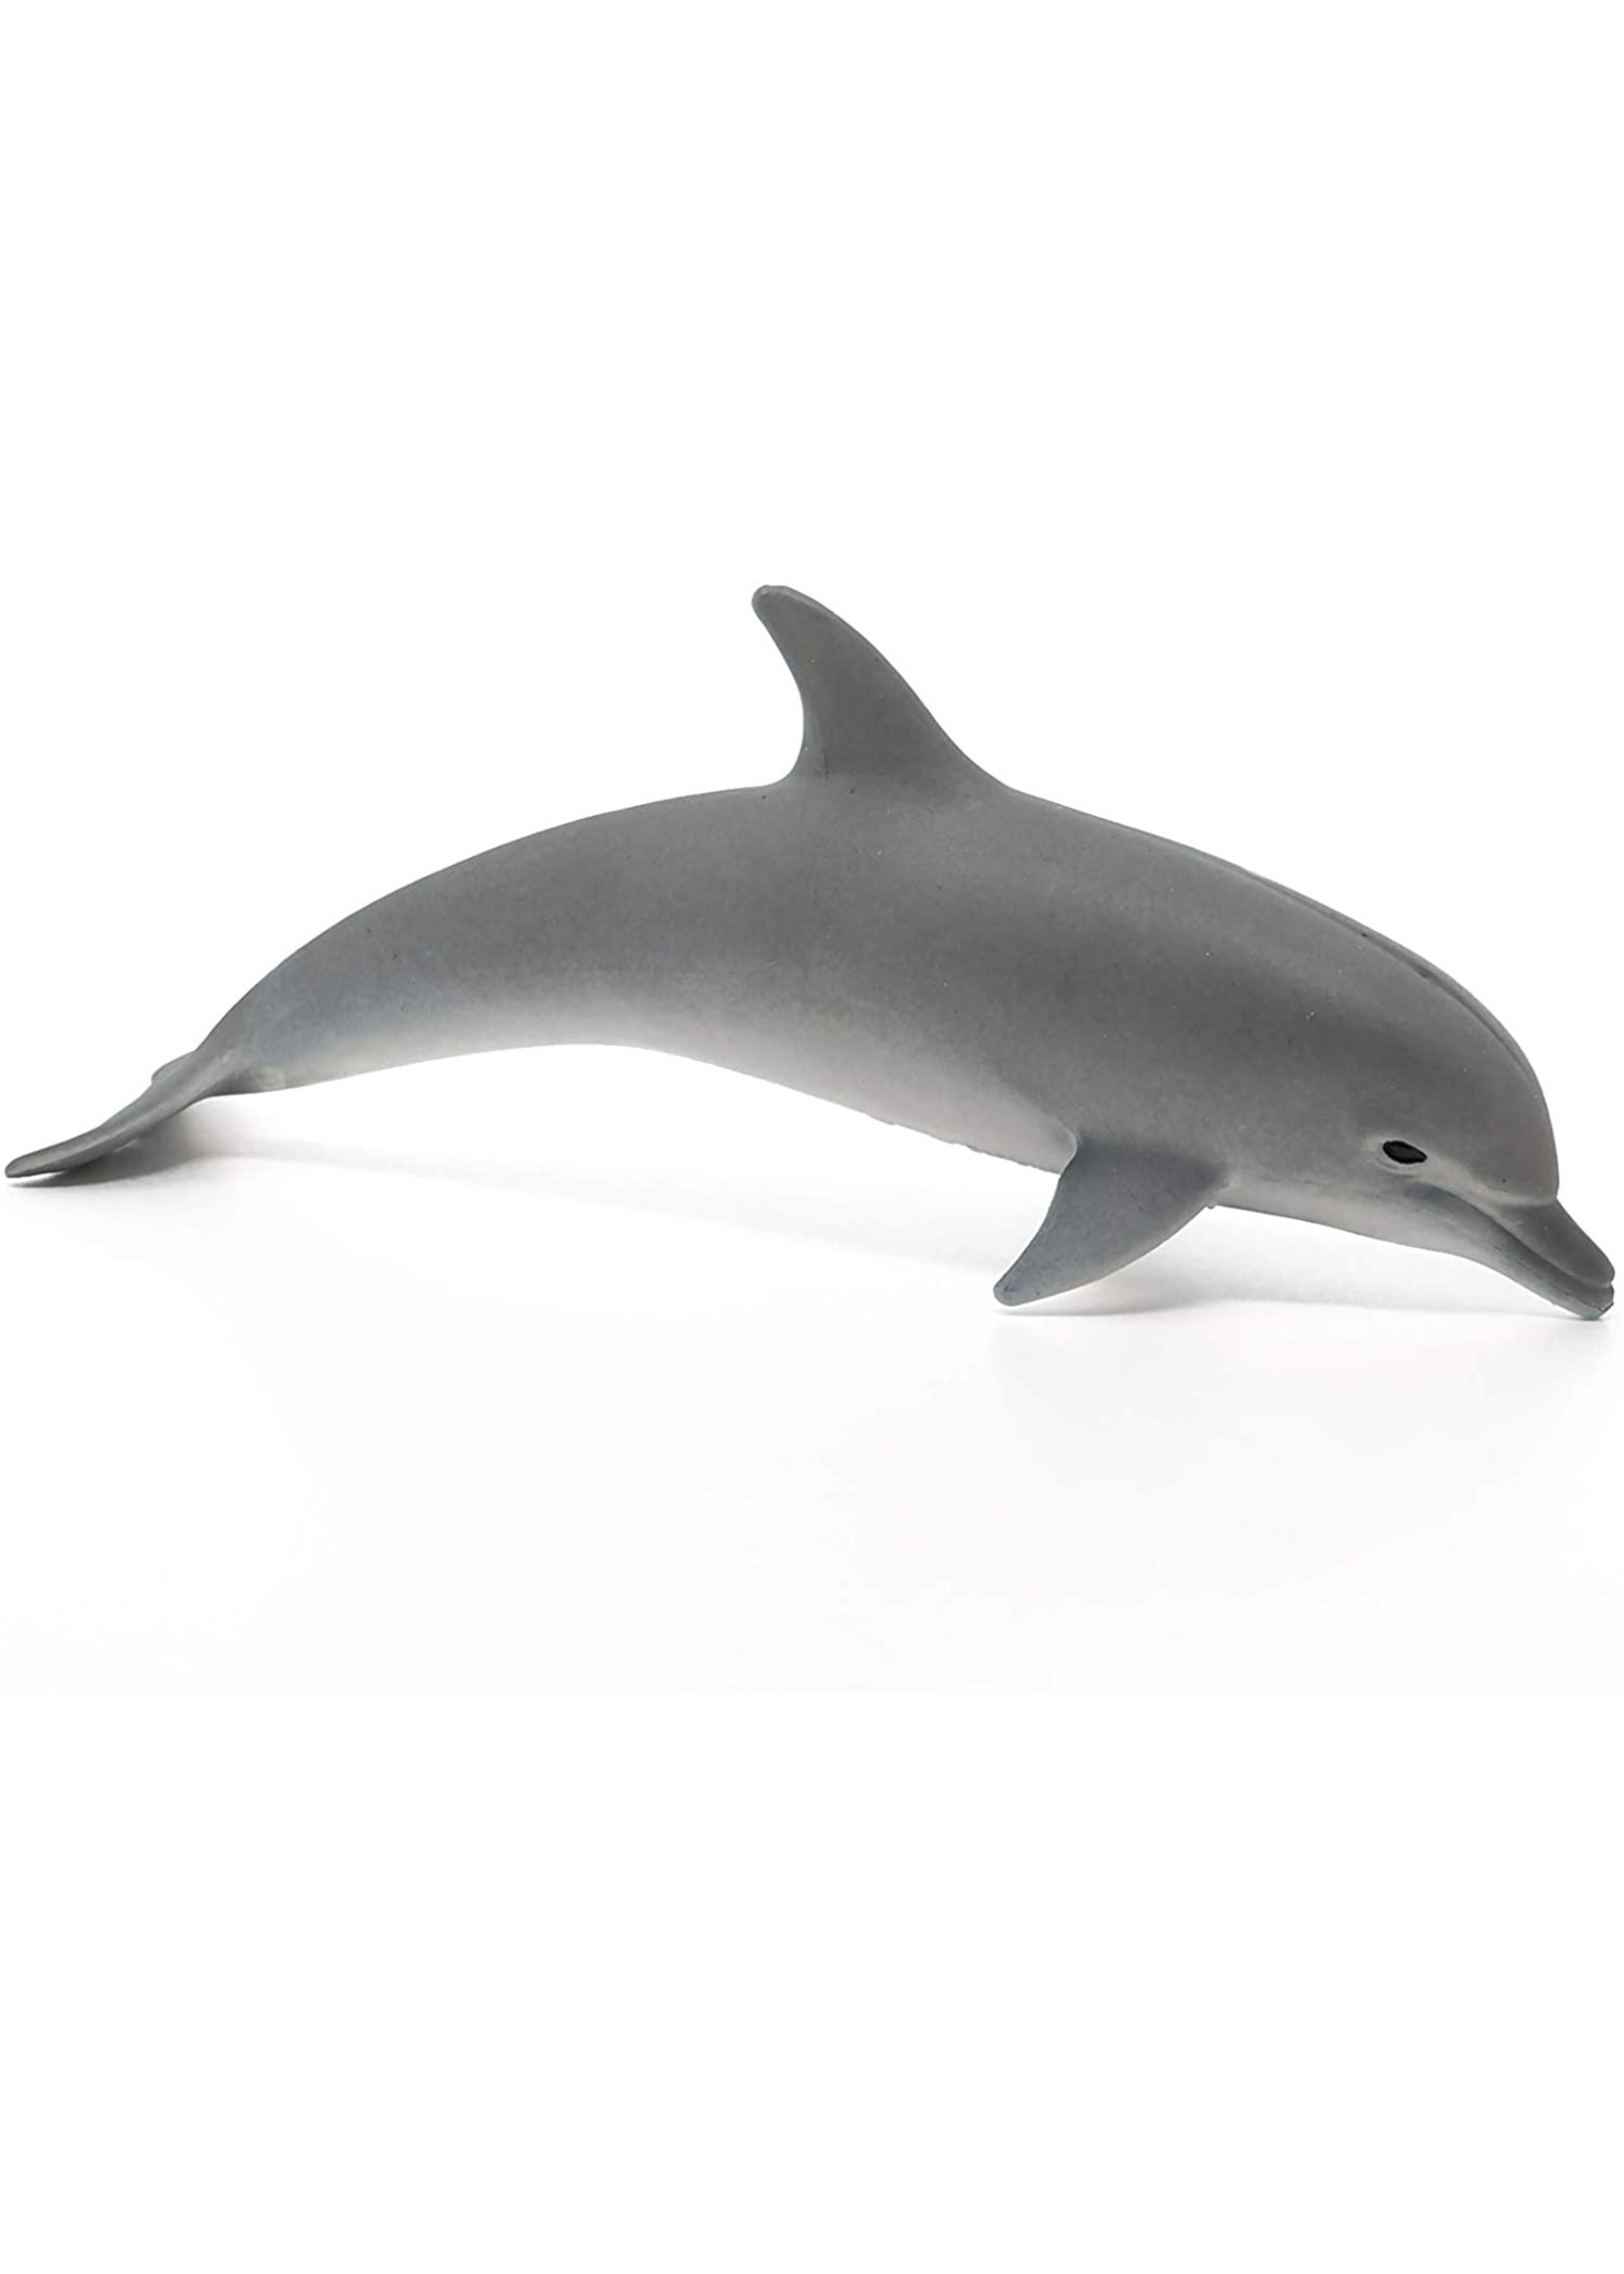 Schleich 14808 - Dolphin